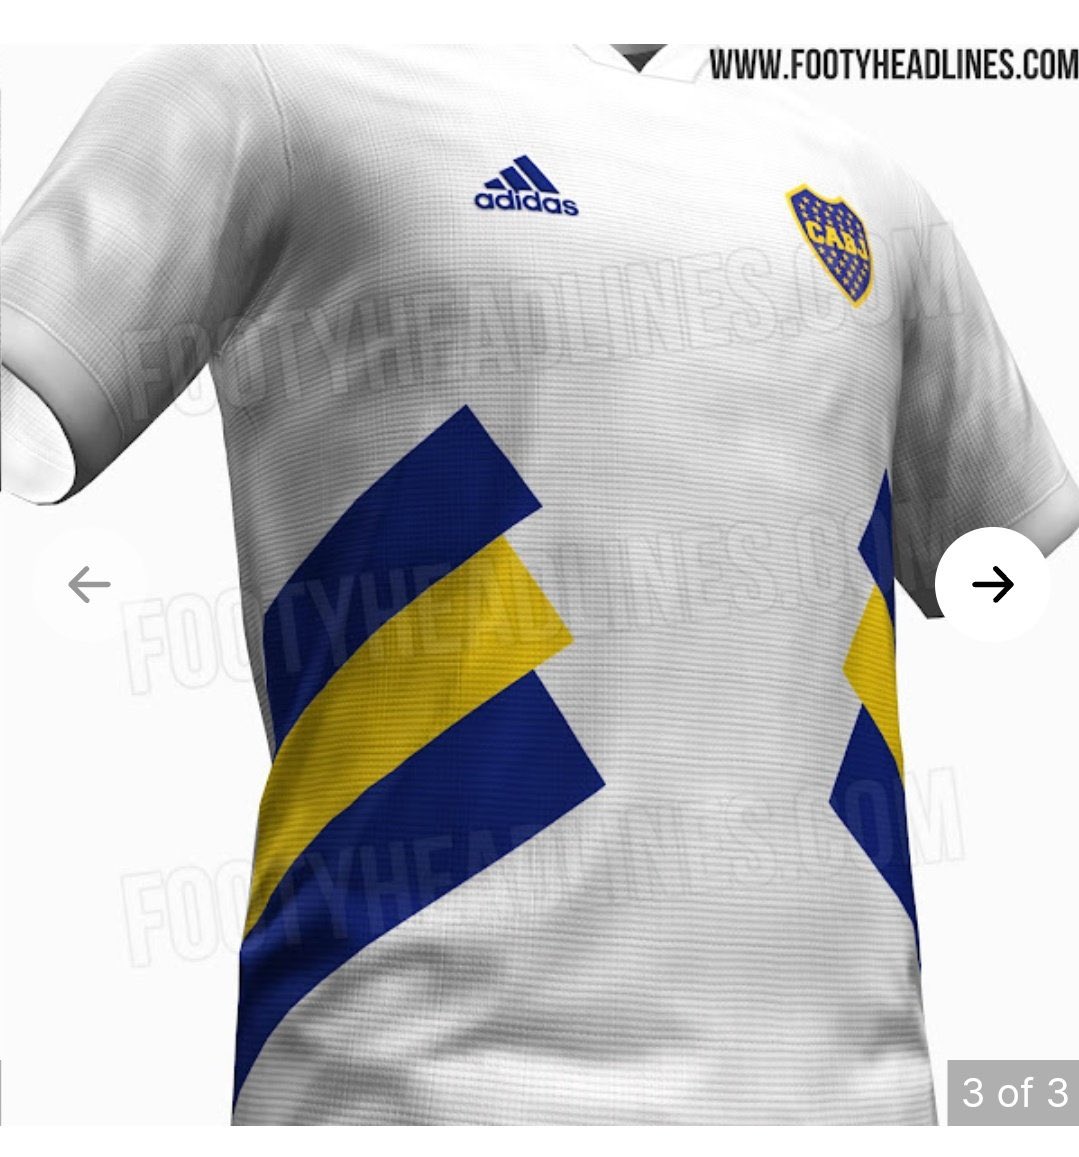 Boca Juniors - La12Tuittera on X: "👕 Según el sitio @Footy_Headlines Adidas  tiene pensado sacar para febrero 2023 está camiseta retro de #Boca,  inspirada en diseños de los 90'. ¿Les gusta? 👀